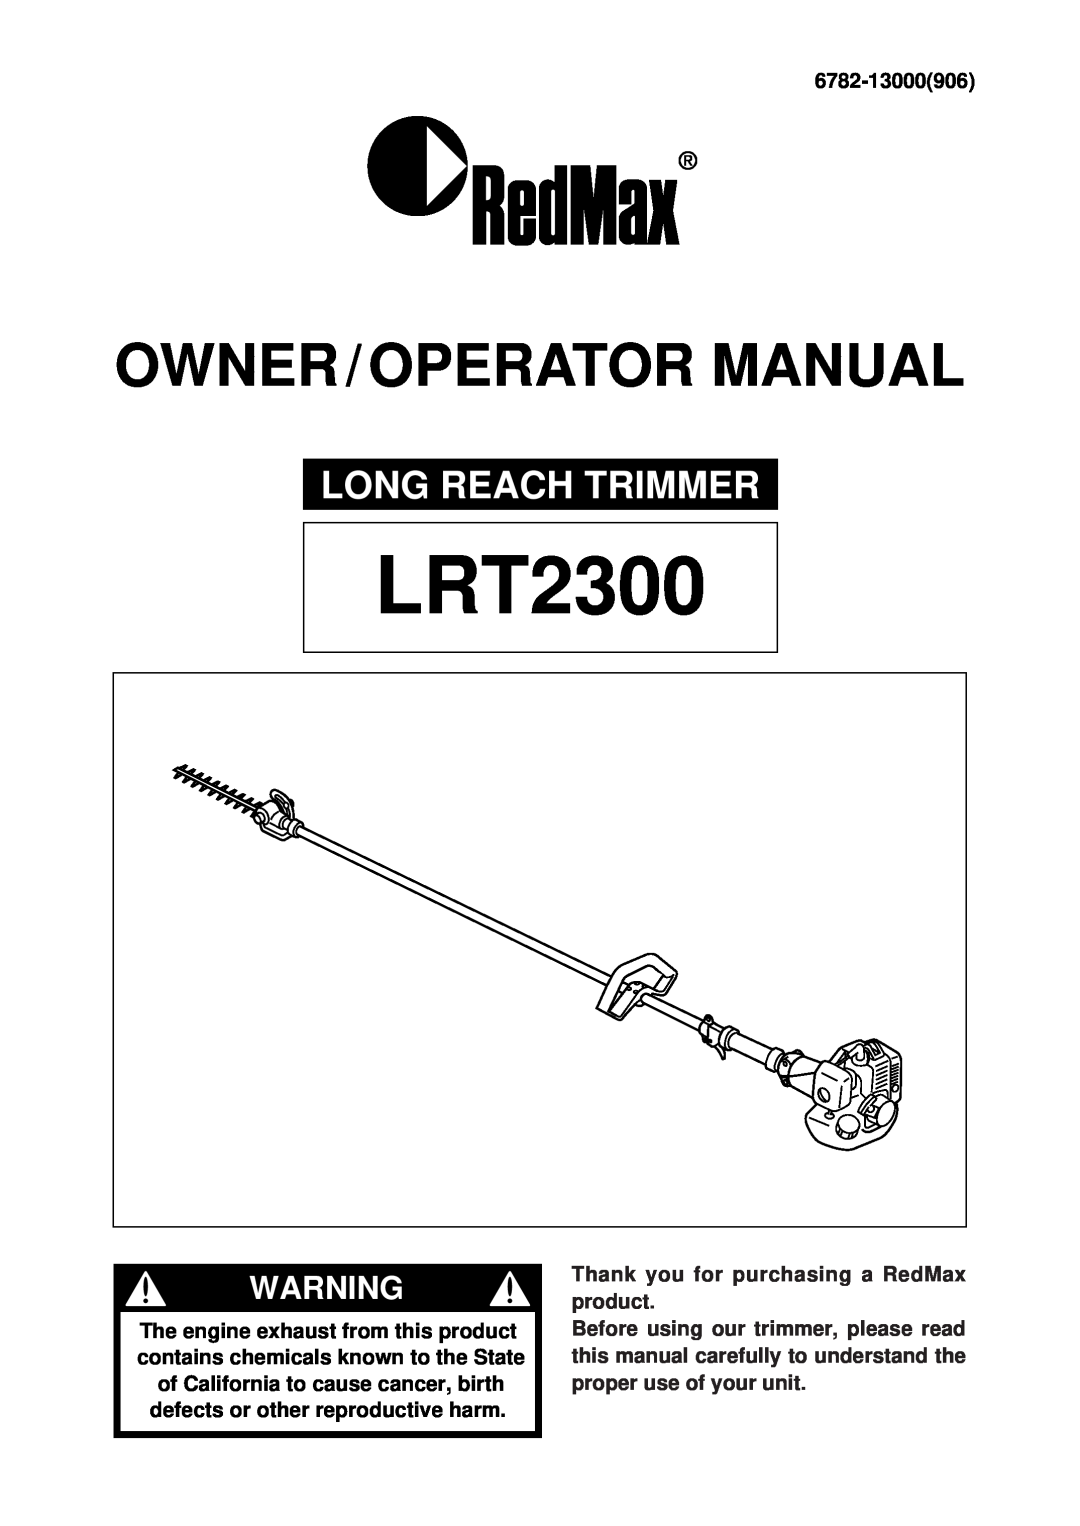 RedMax LRT2300 manual Owner / Operator Manual, Long Reach Trimmer, 6782-13000906 